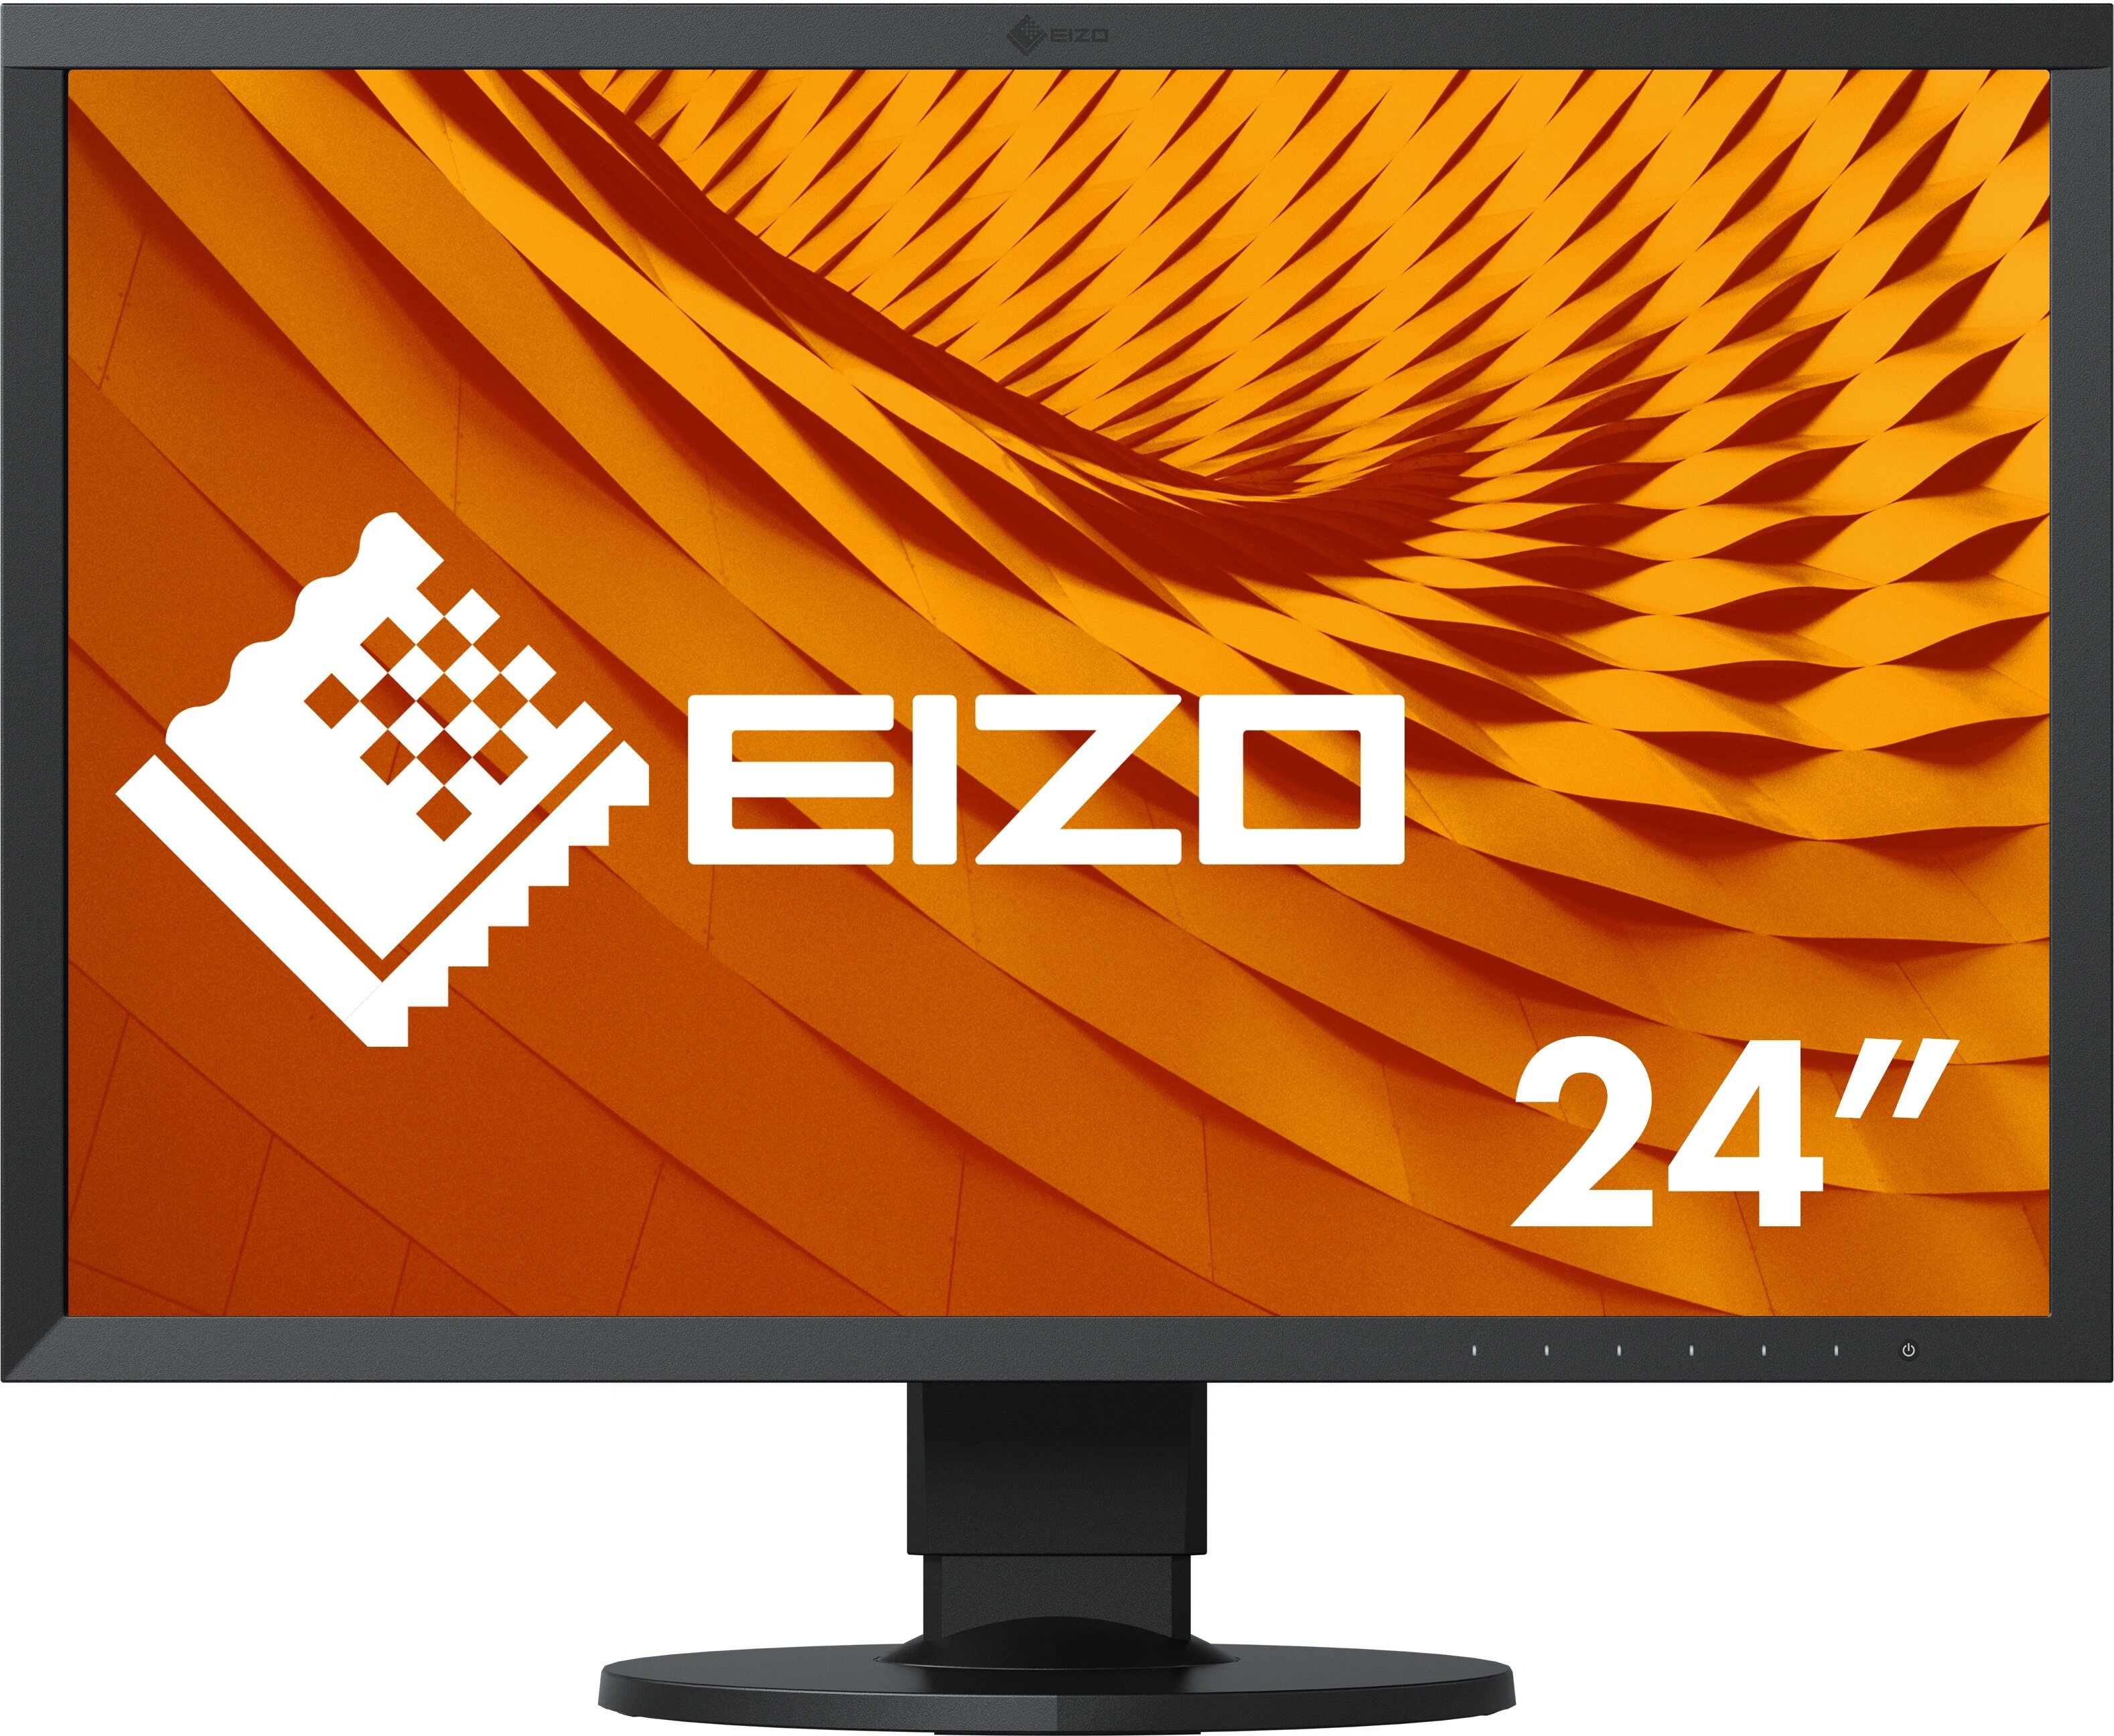 Monitor EIZO ColorEdge CS2410 24.1" 